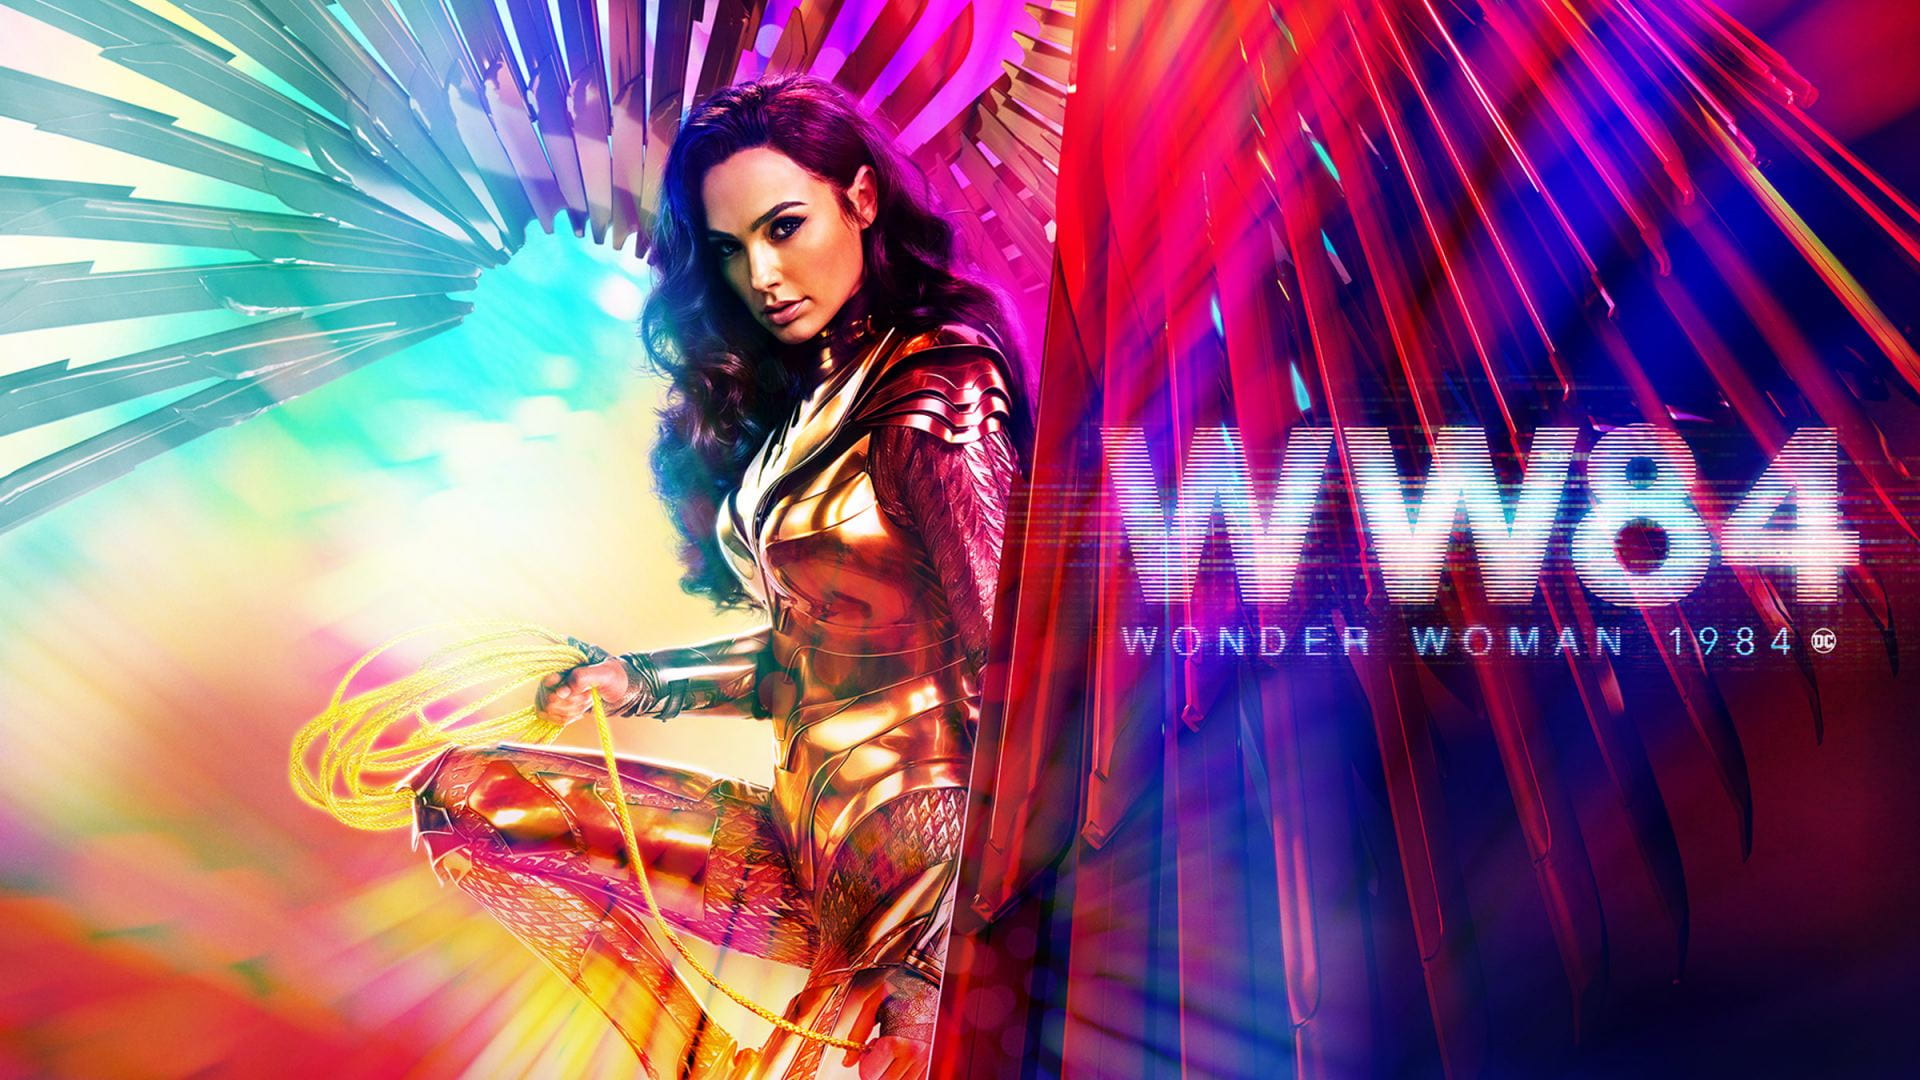  Wonder Woman 1984 (2020) Wonder Woman 1984 (2020) 